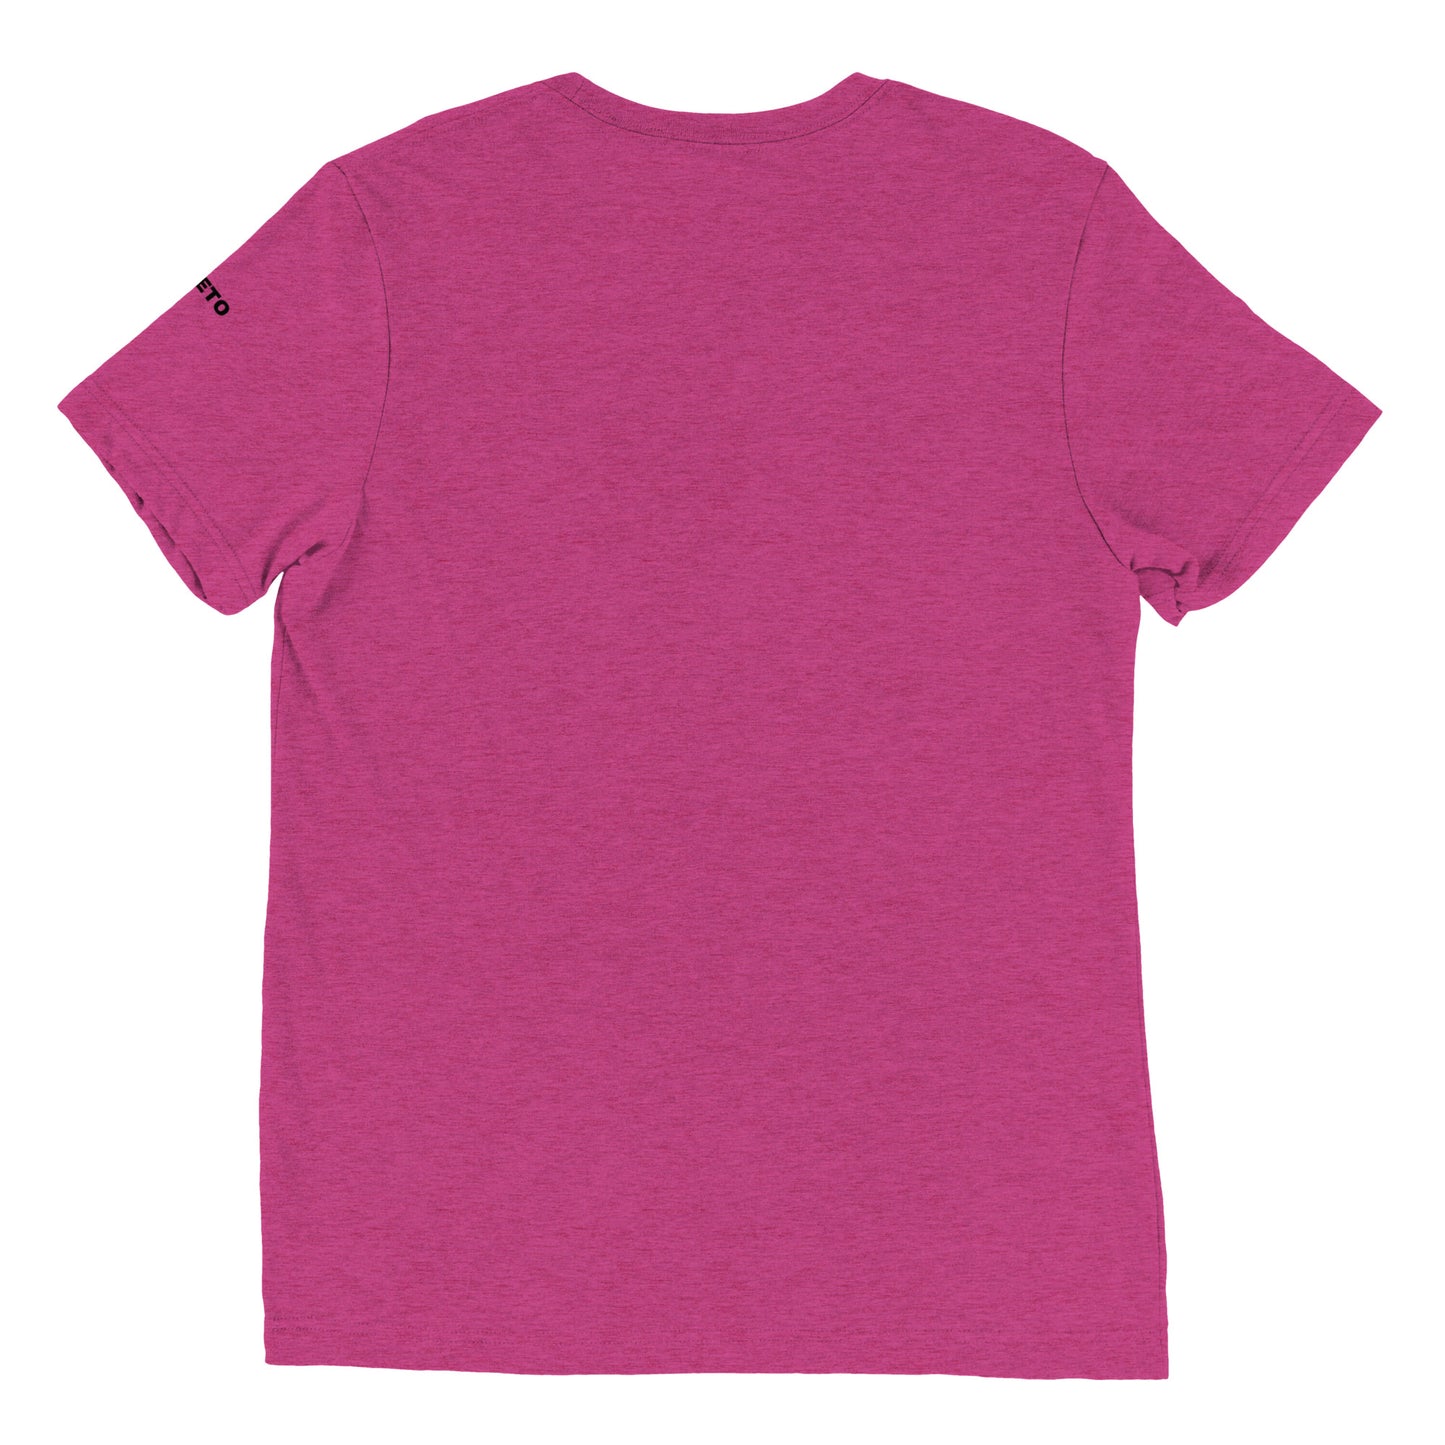 COLIBRI Unisex Tri-blend T-Shirt - Rarileto